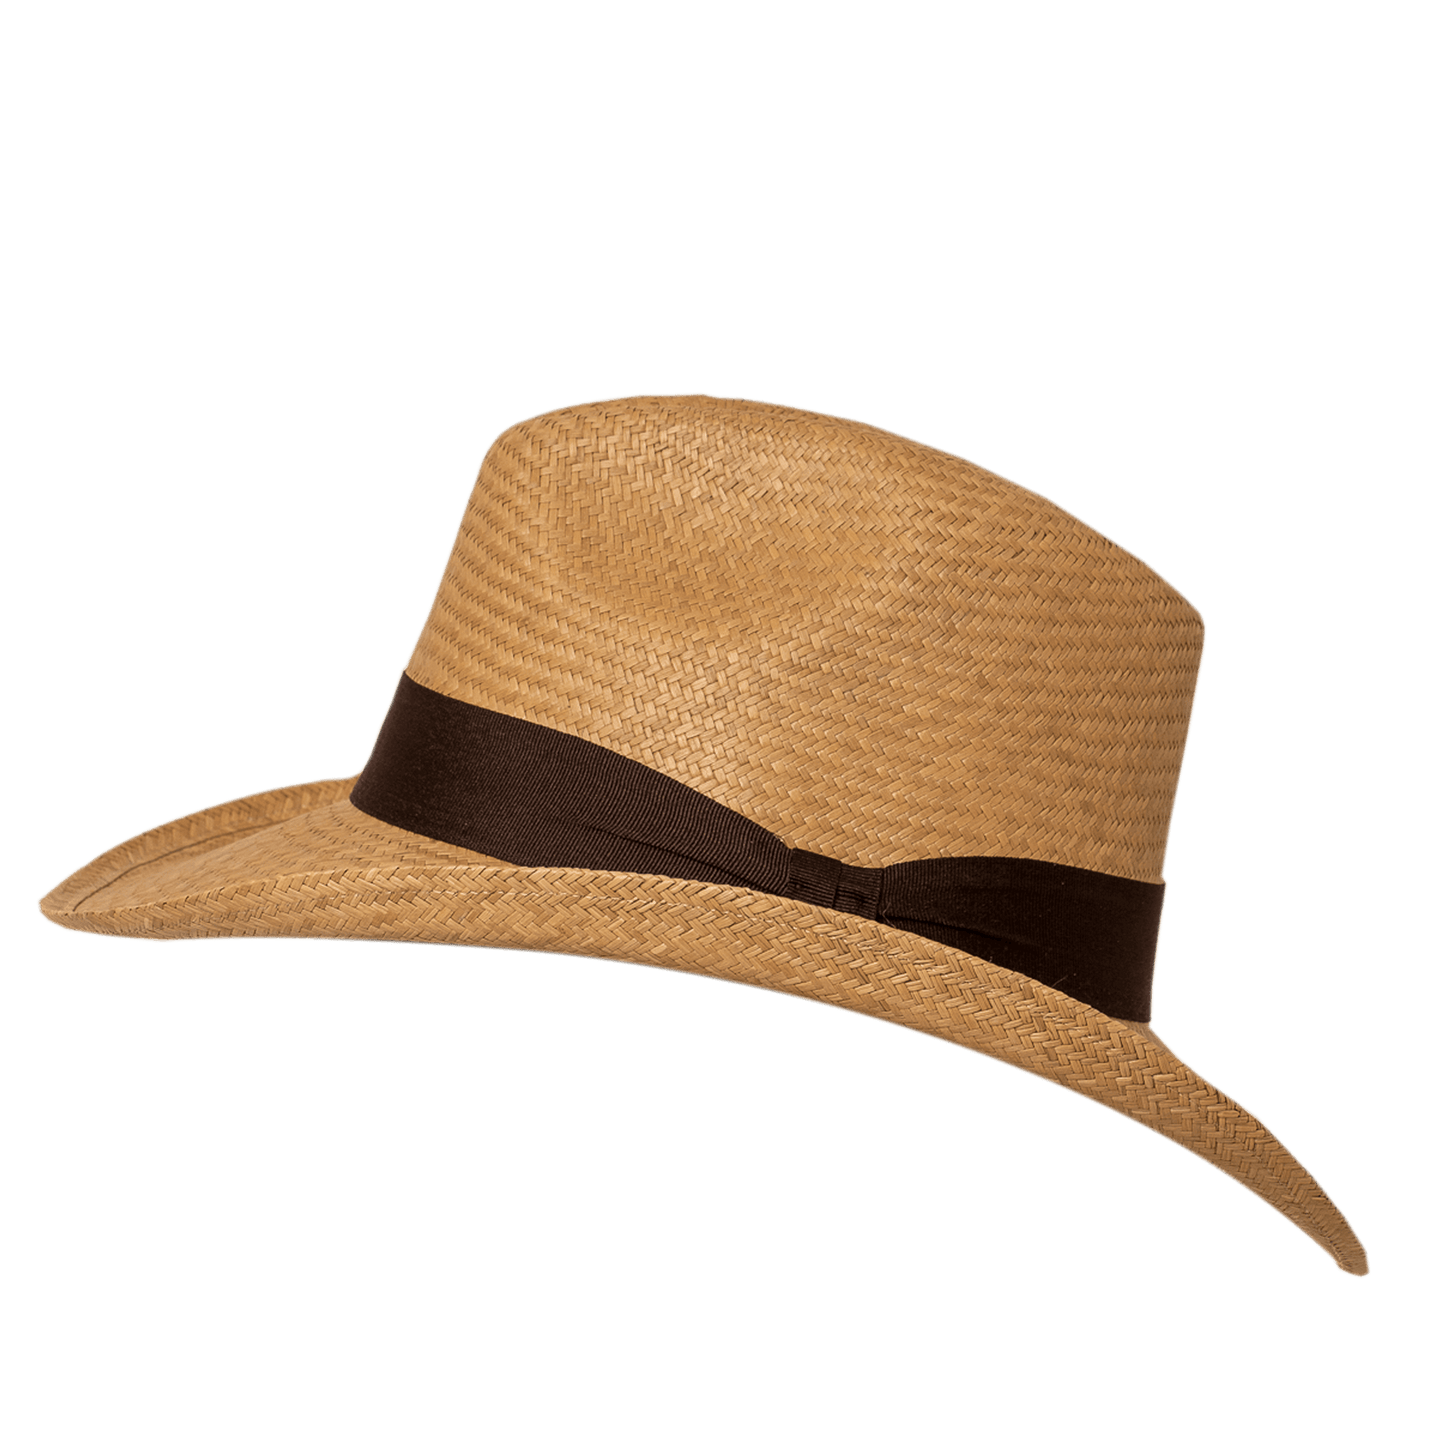    sombrero-aguadeno-borsalino-detalle-cafe